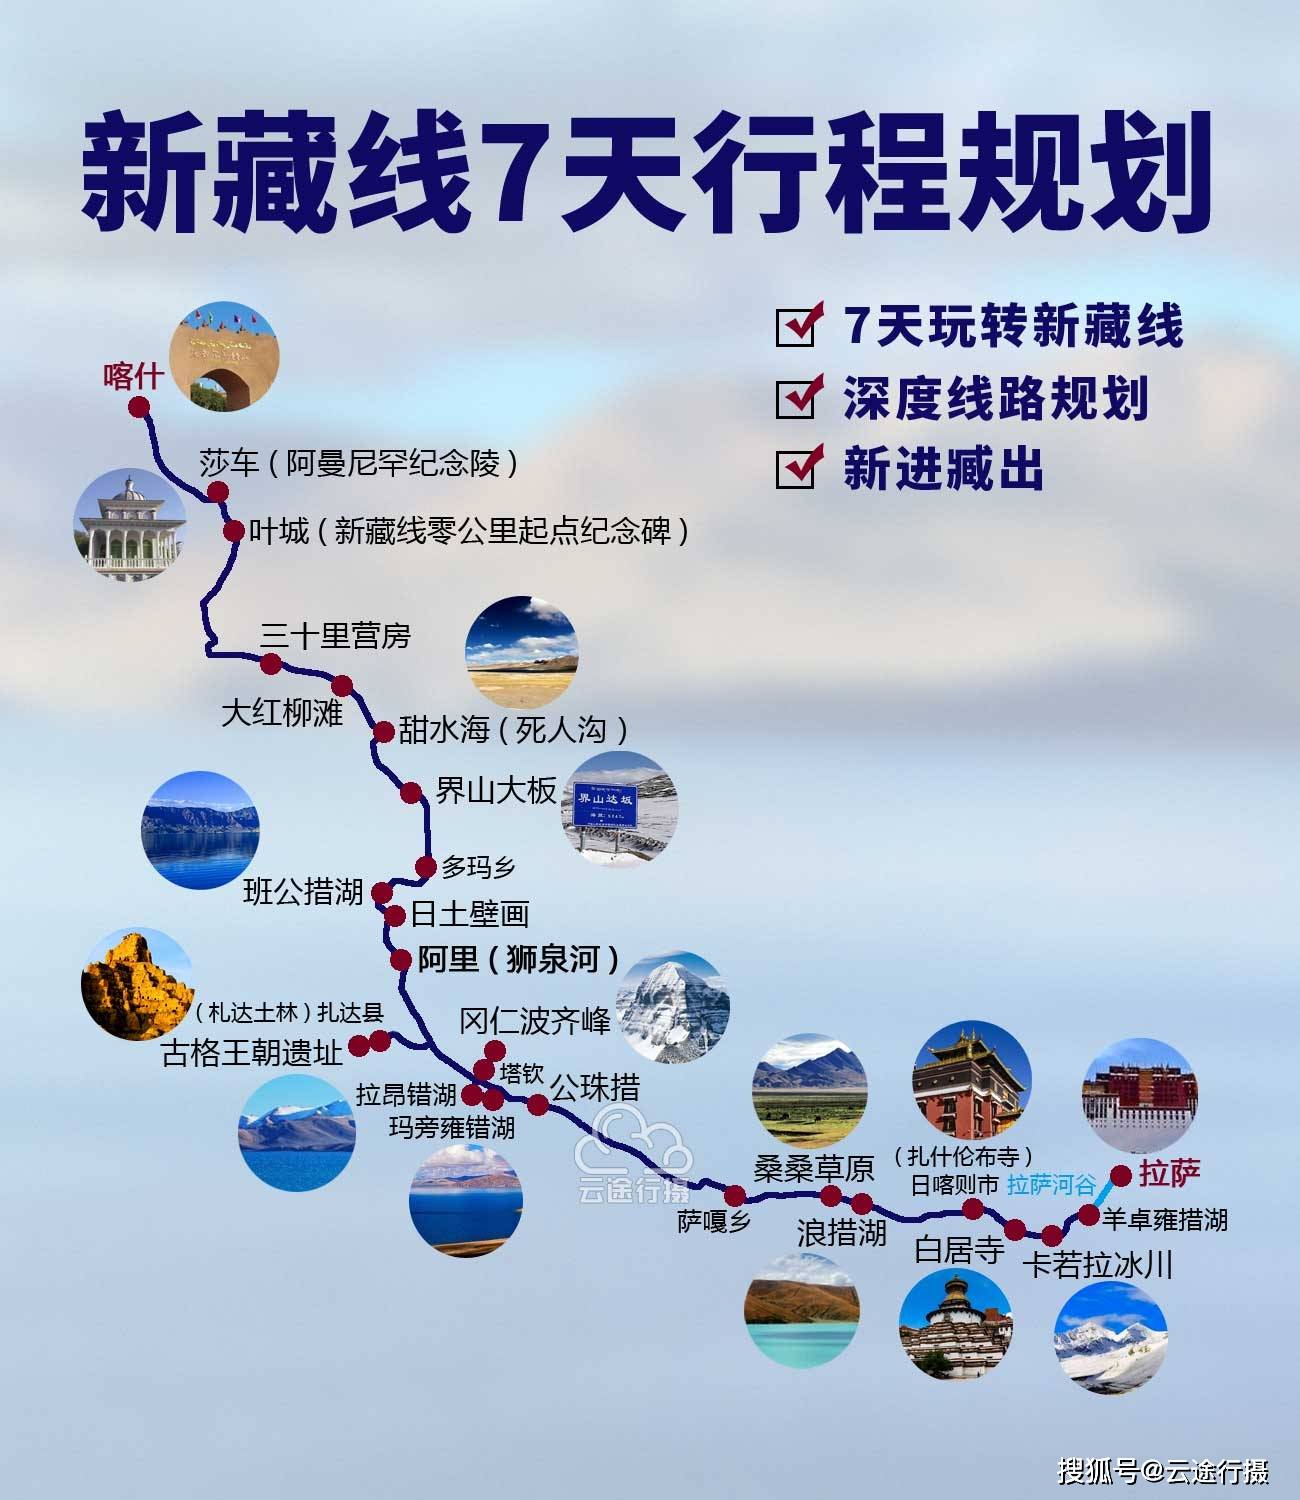 新藏线7日旅游攻略线路图原创新进藏出自驾游路线规划